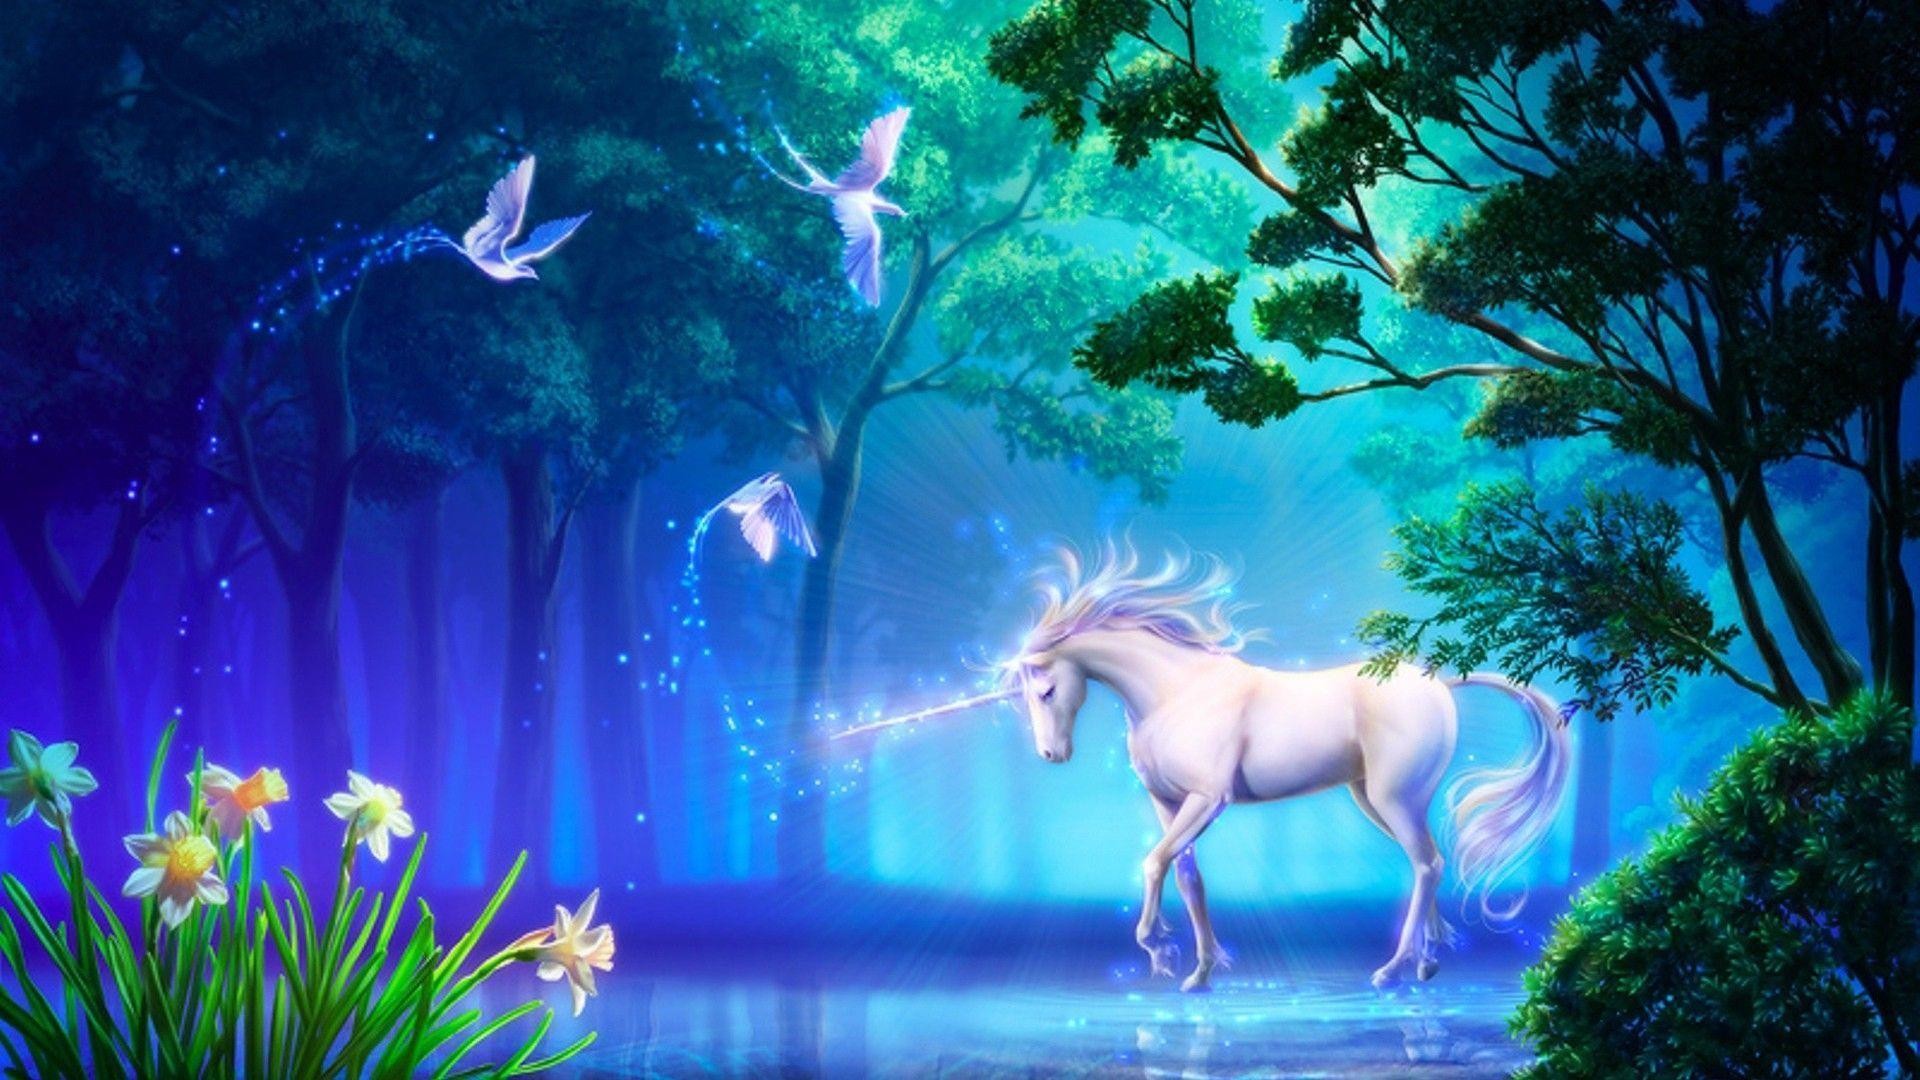 descarga gratuita de fondo de pantalla hd 1080p,unicornio,personaje de ficción,paisaje natural,criatura mítica,cielo